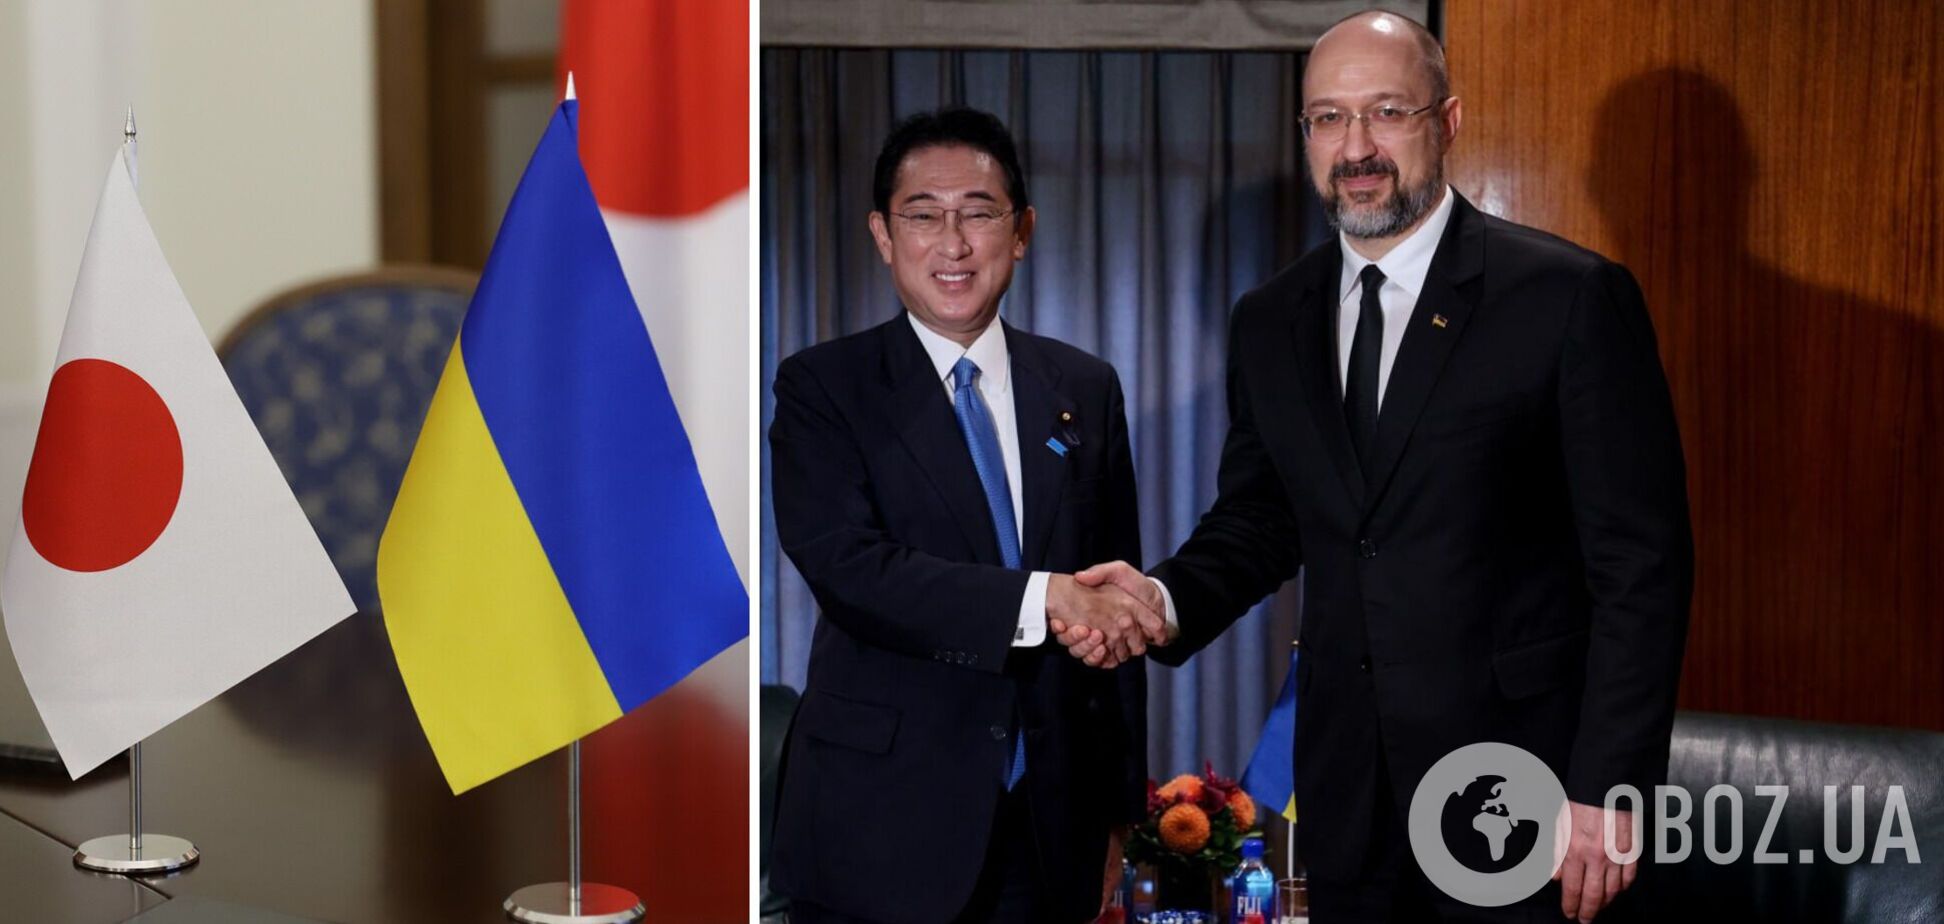 Посольство Японии возвращается в Киев, сообщил  Шмыгаль после встречи с Фумио